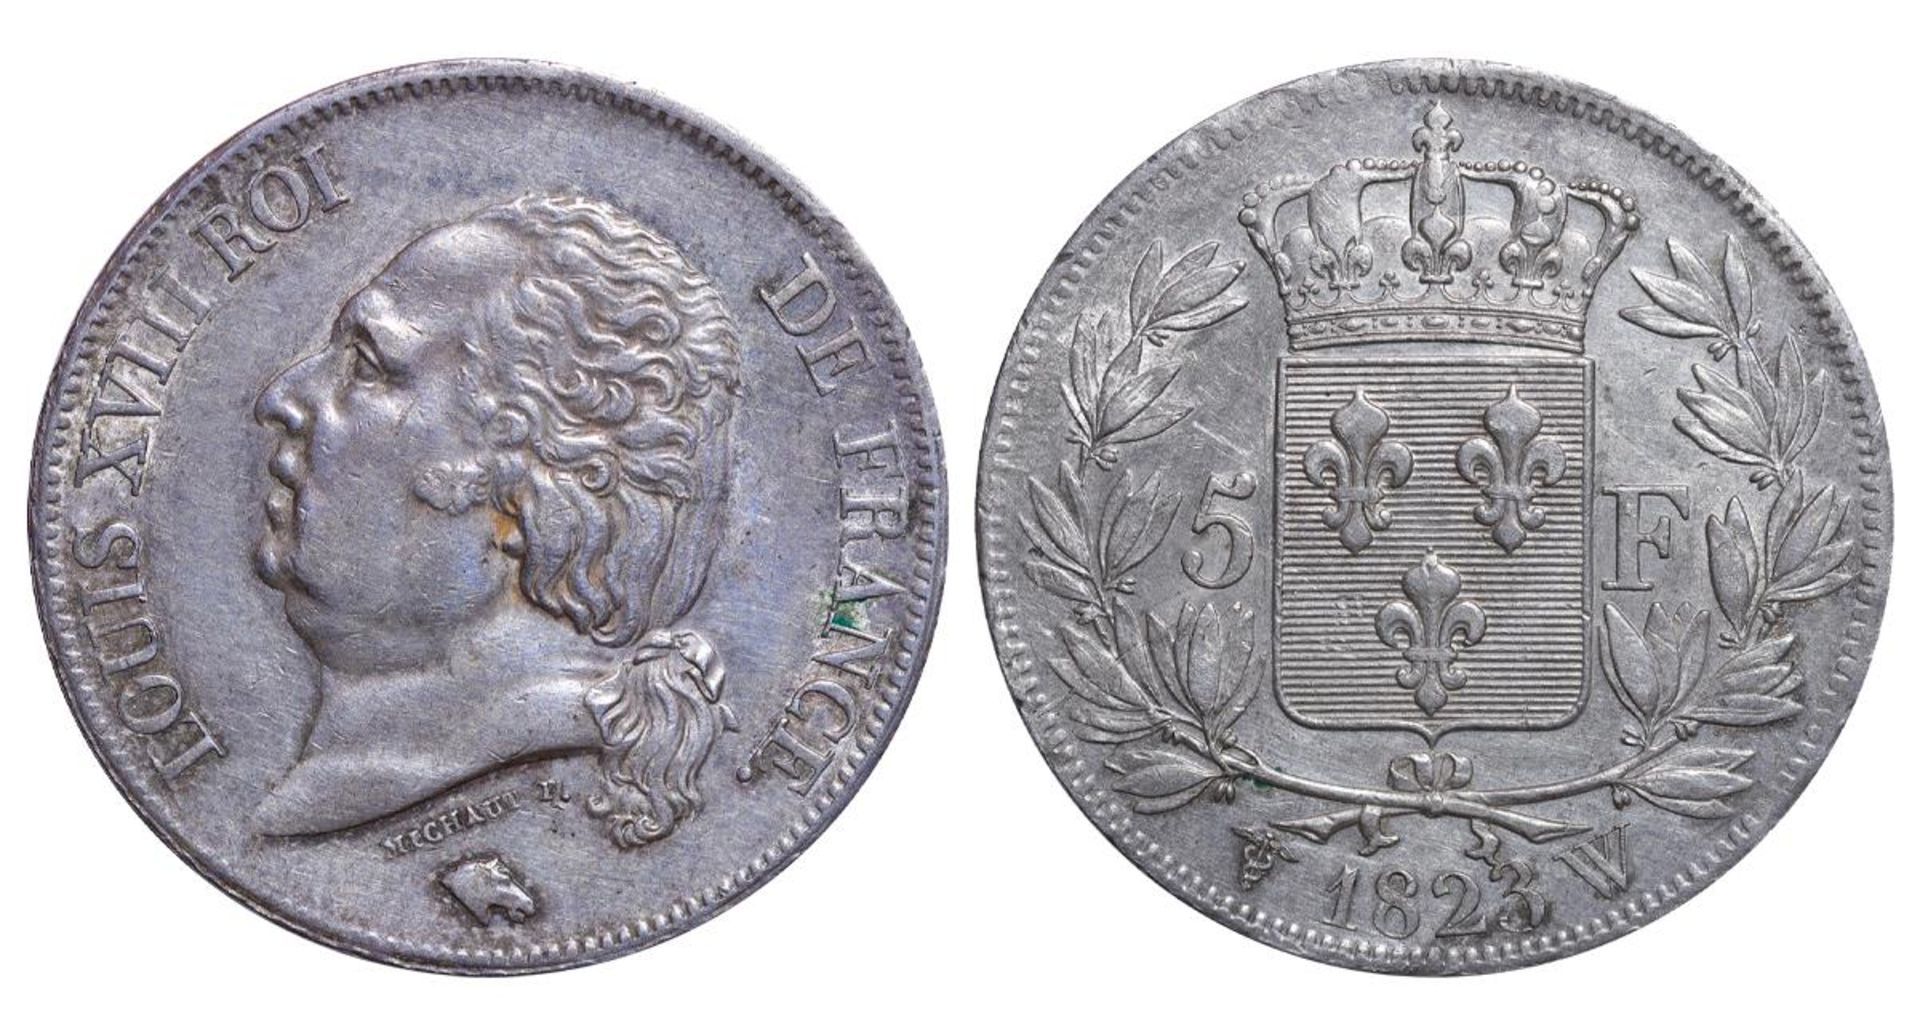 France, 5 Francs, 1823 year, W